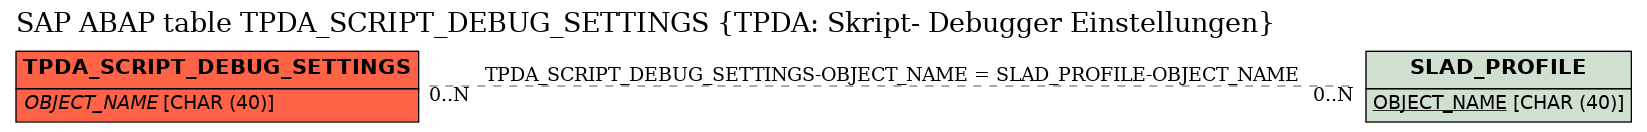 E-R Diagram for table TPDA_SCRIPT_DEBUG_SETTINGS (TPDA: Skript- Debugger Einstellungen)